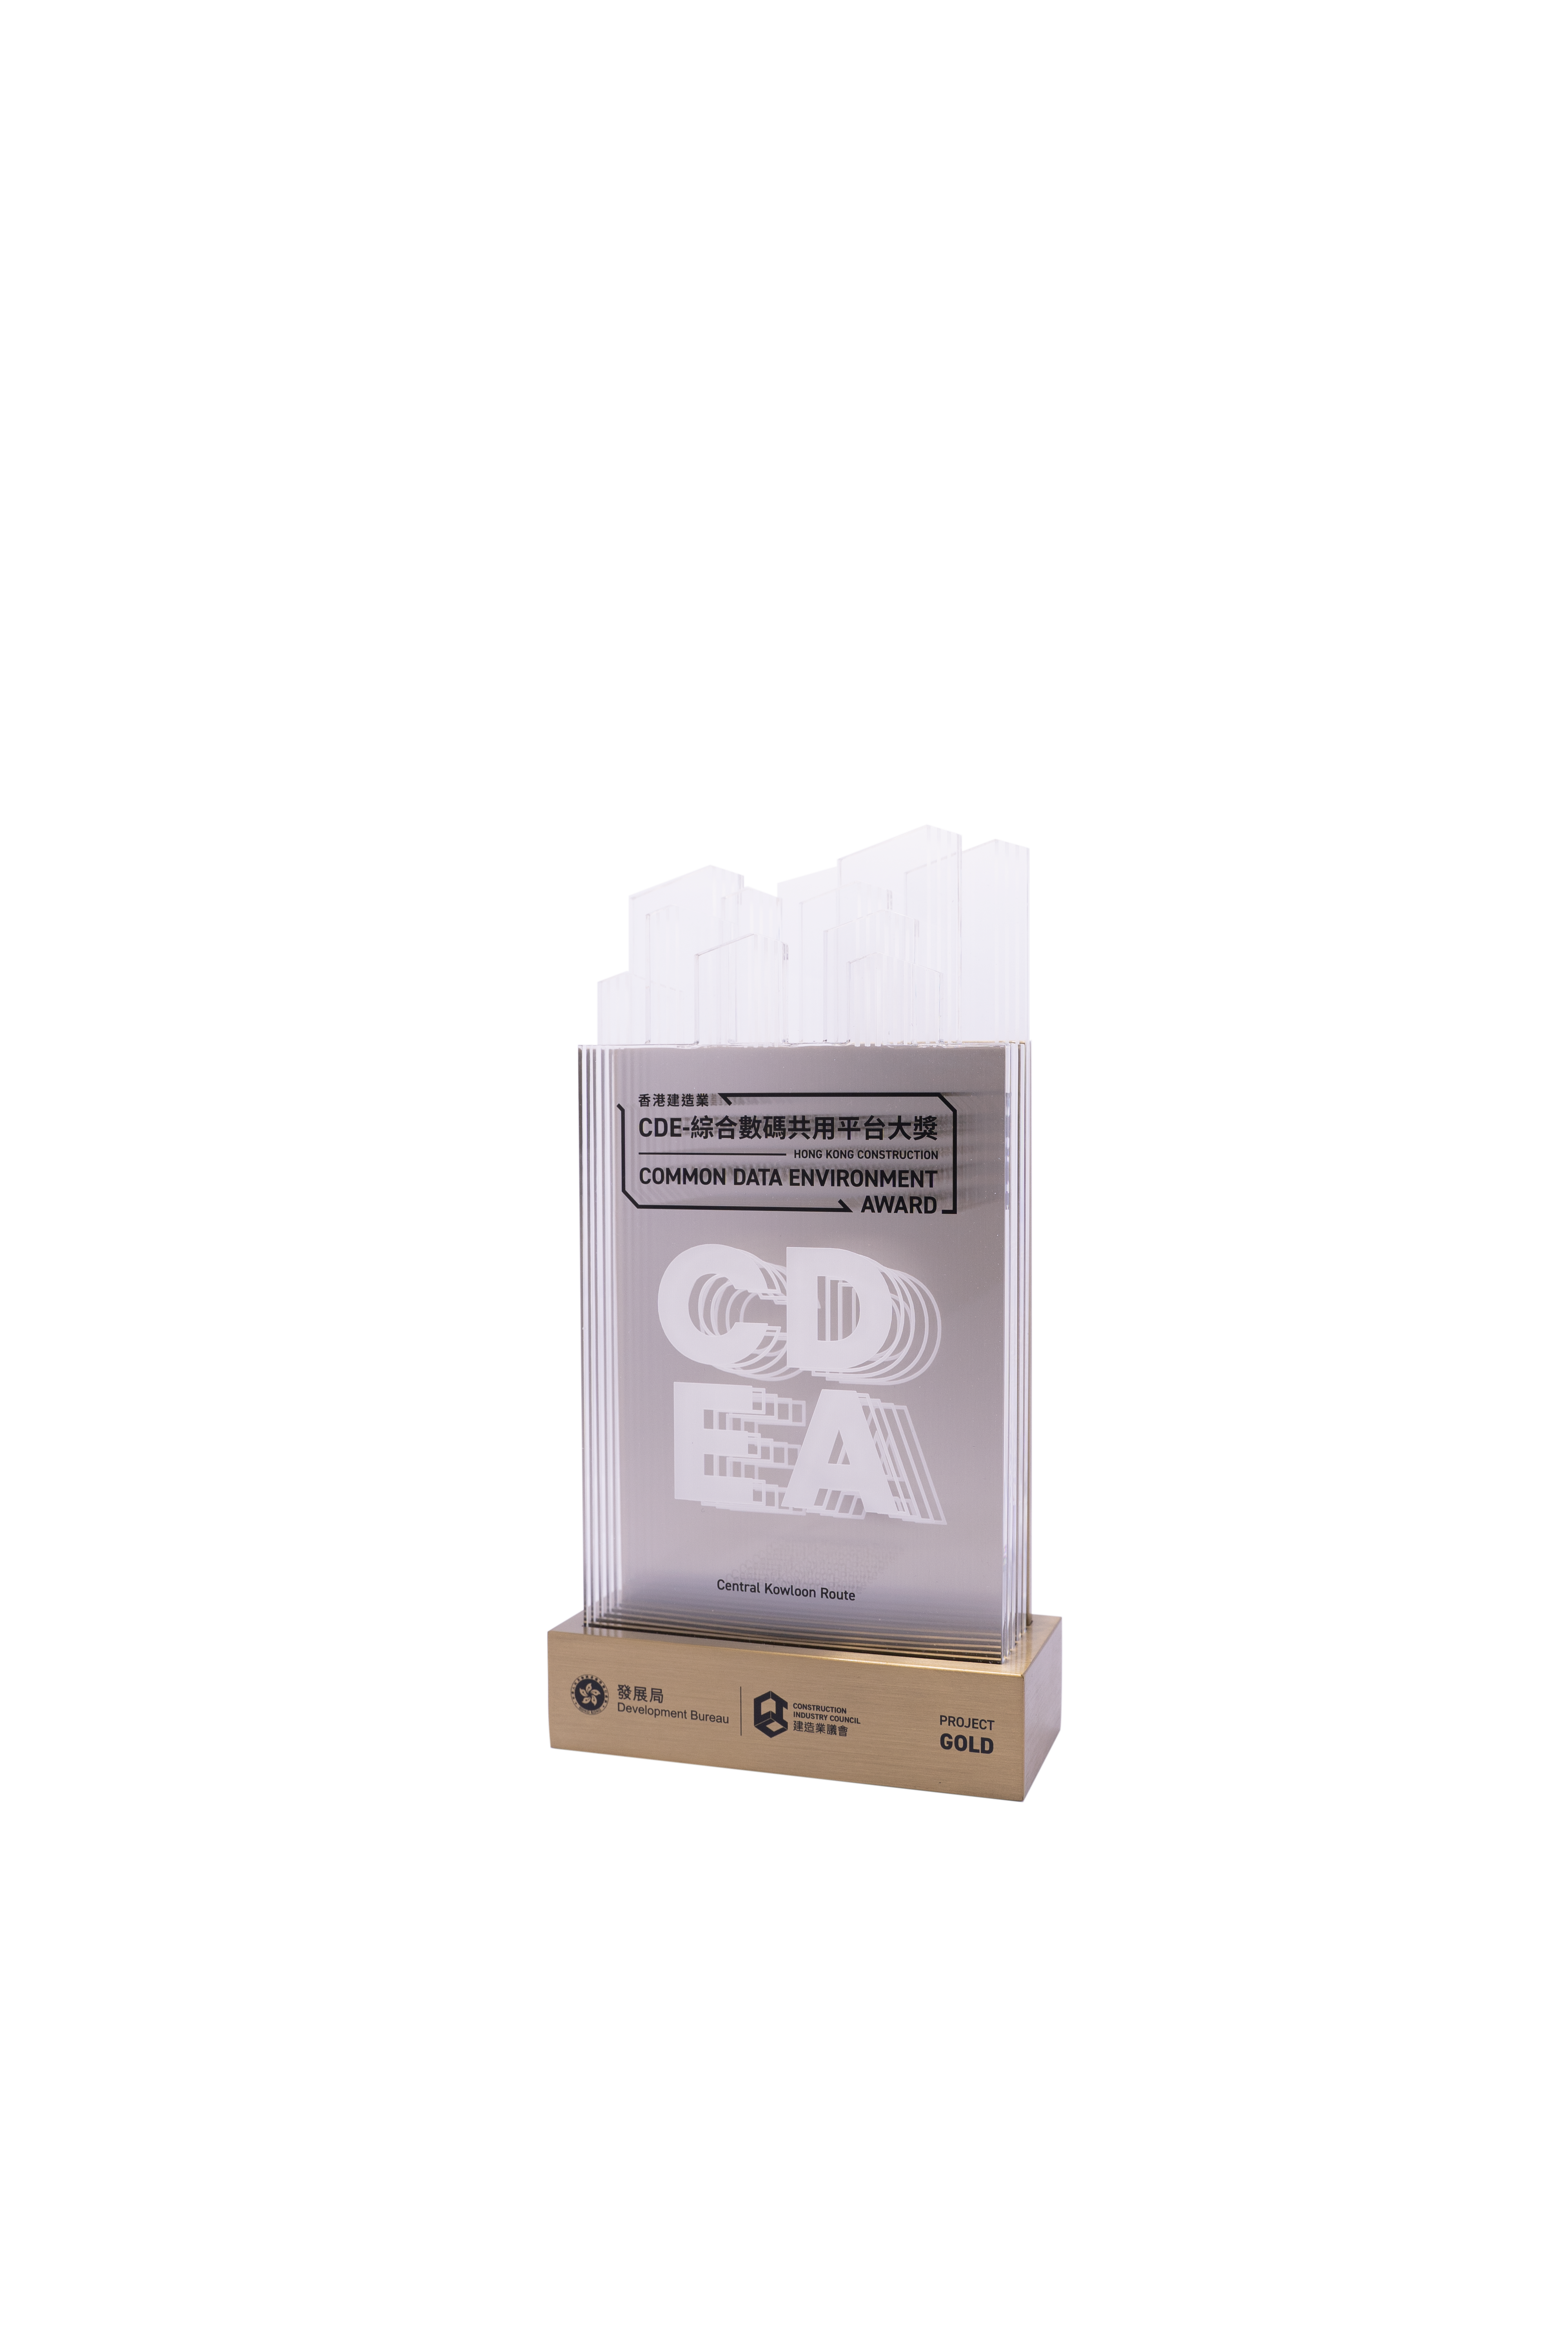 Hong Kong Construction Common Data Environment Award – Gold Award under project category